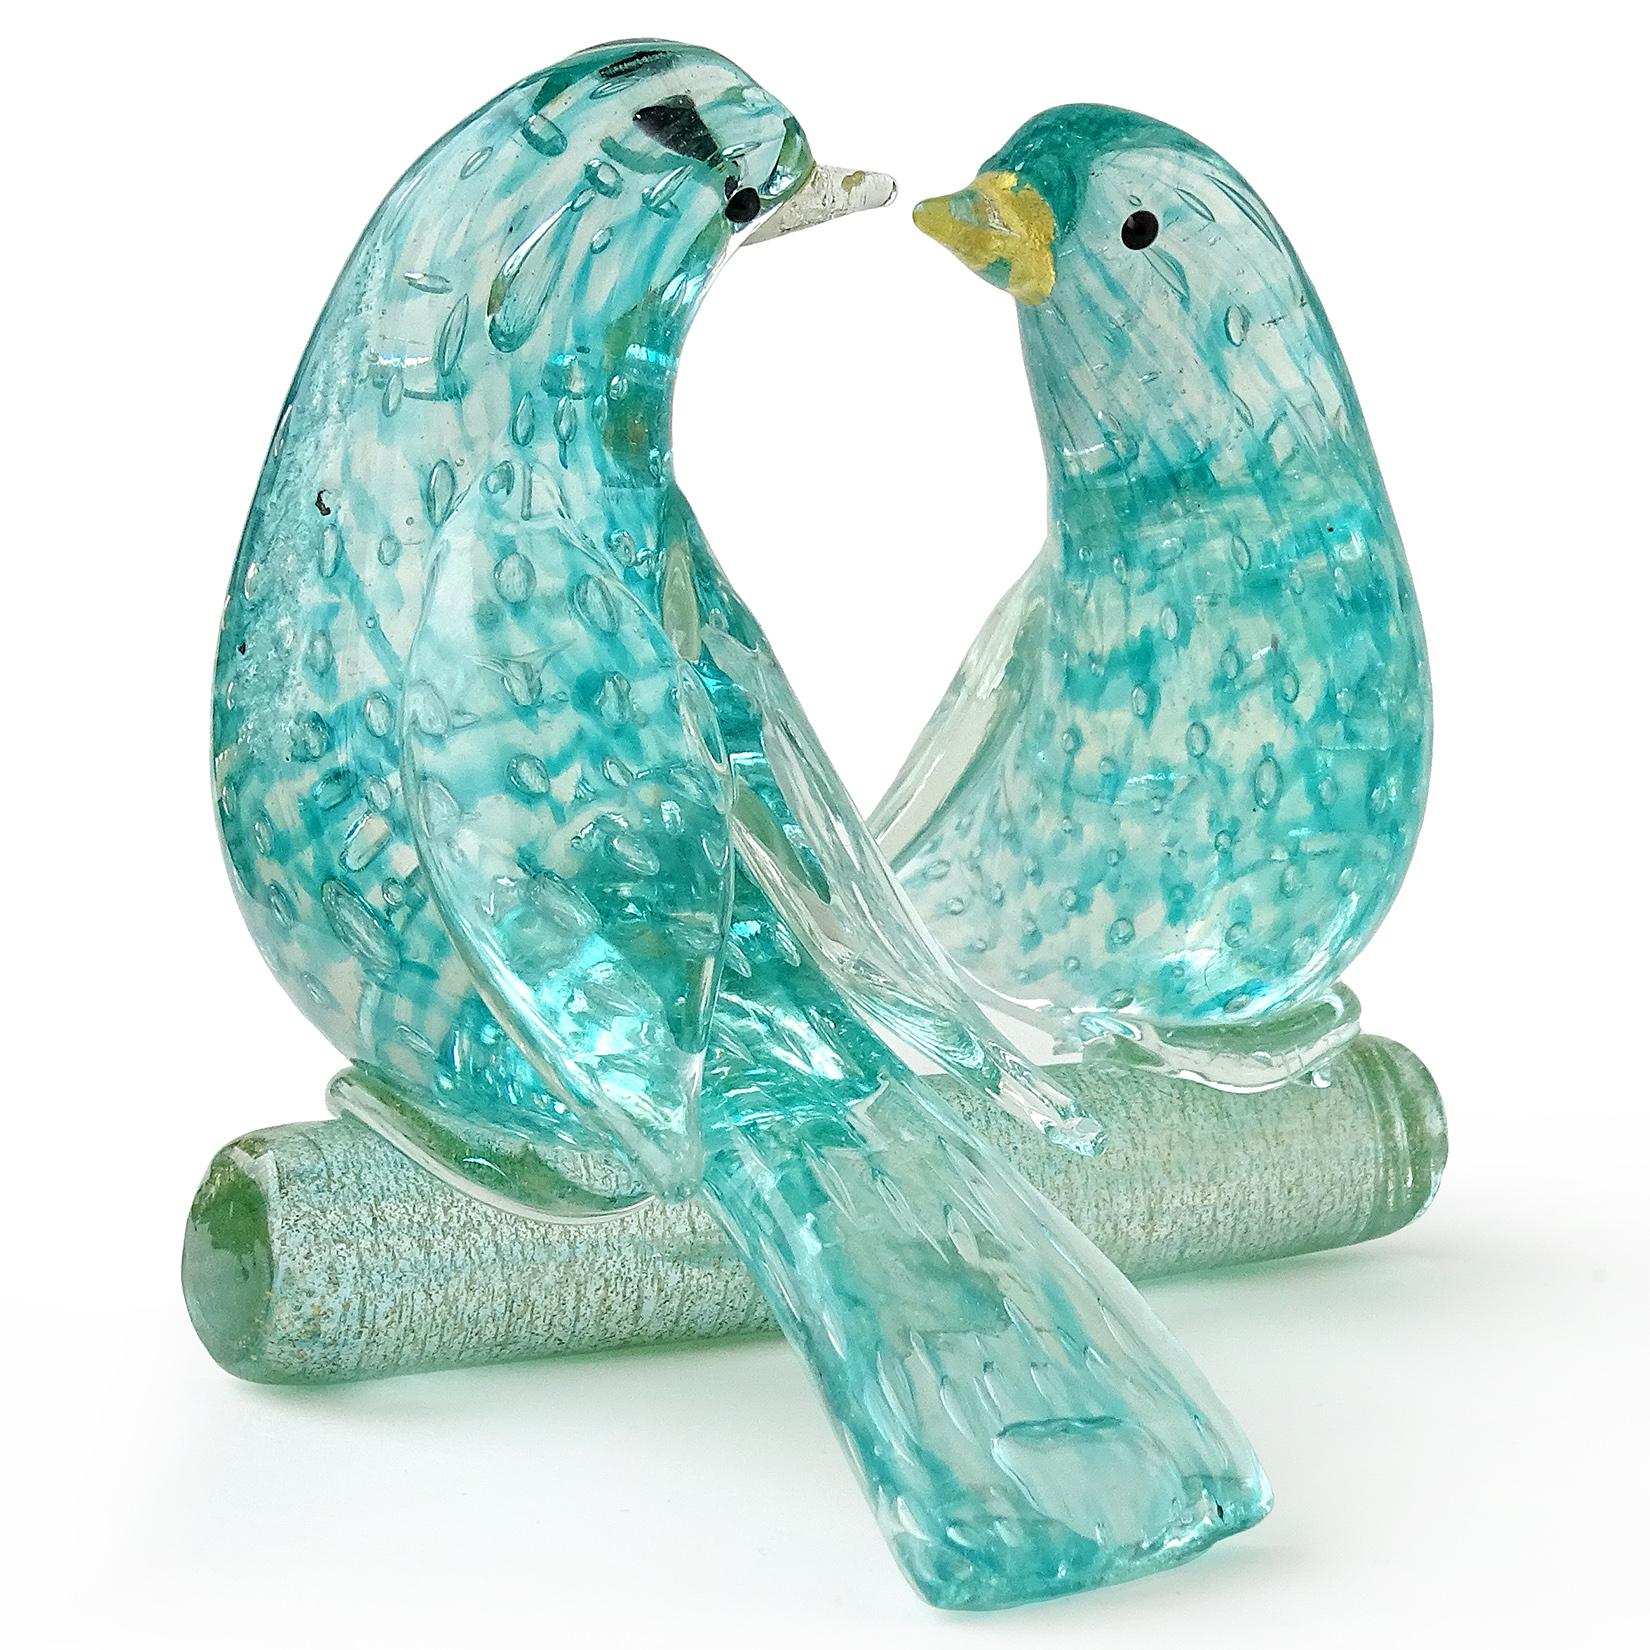 Barovier Toso Murano Türkis Gold Fleck italienische Kunst Glas Love Birds Skulptur (Handgefertigt)